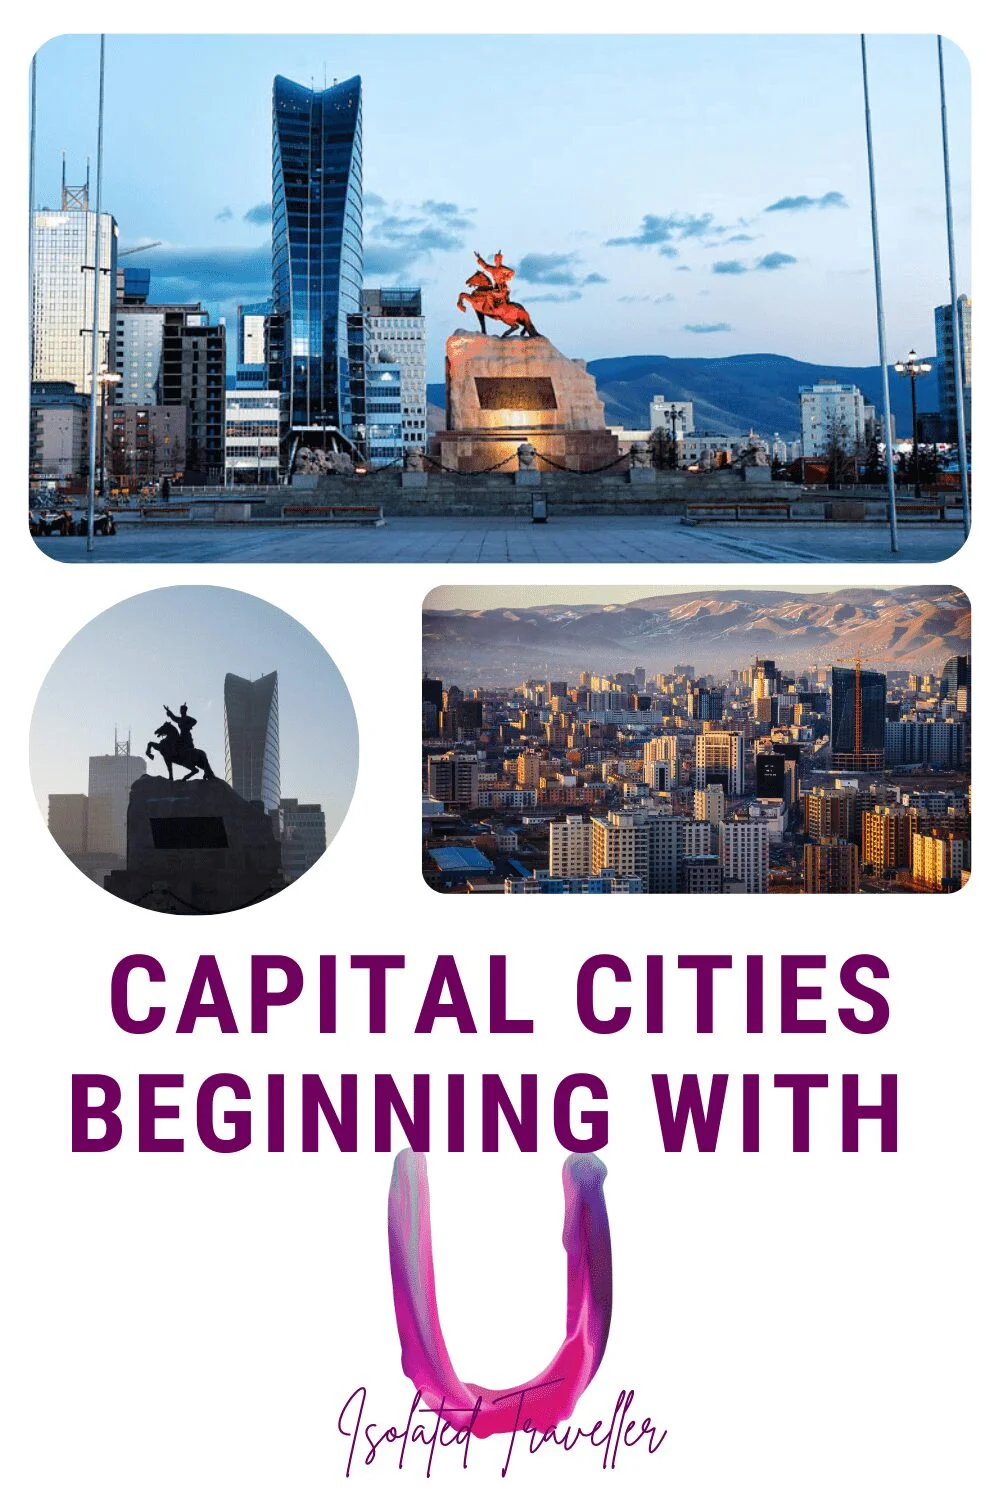 Washington Capitals on X: 𝗕𝗘𝗛𝗜𝗡𝗗 𝗧𝗛𝗘 𝗕𝗟𝗢𝗢𝗠 Learn